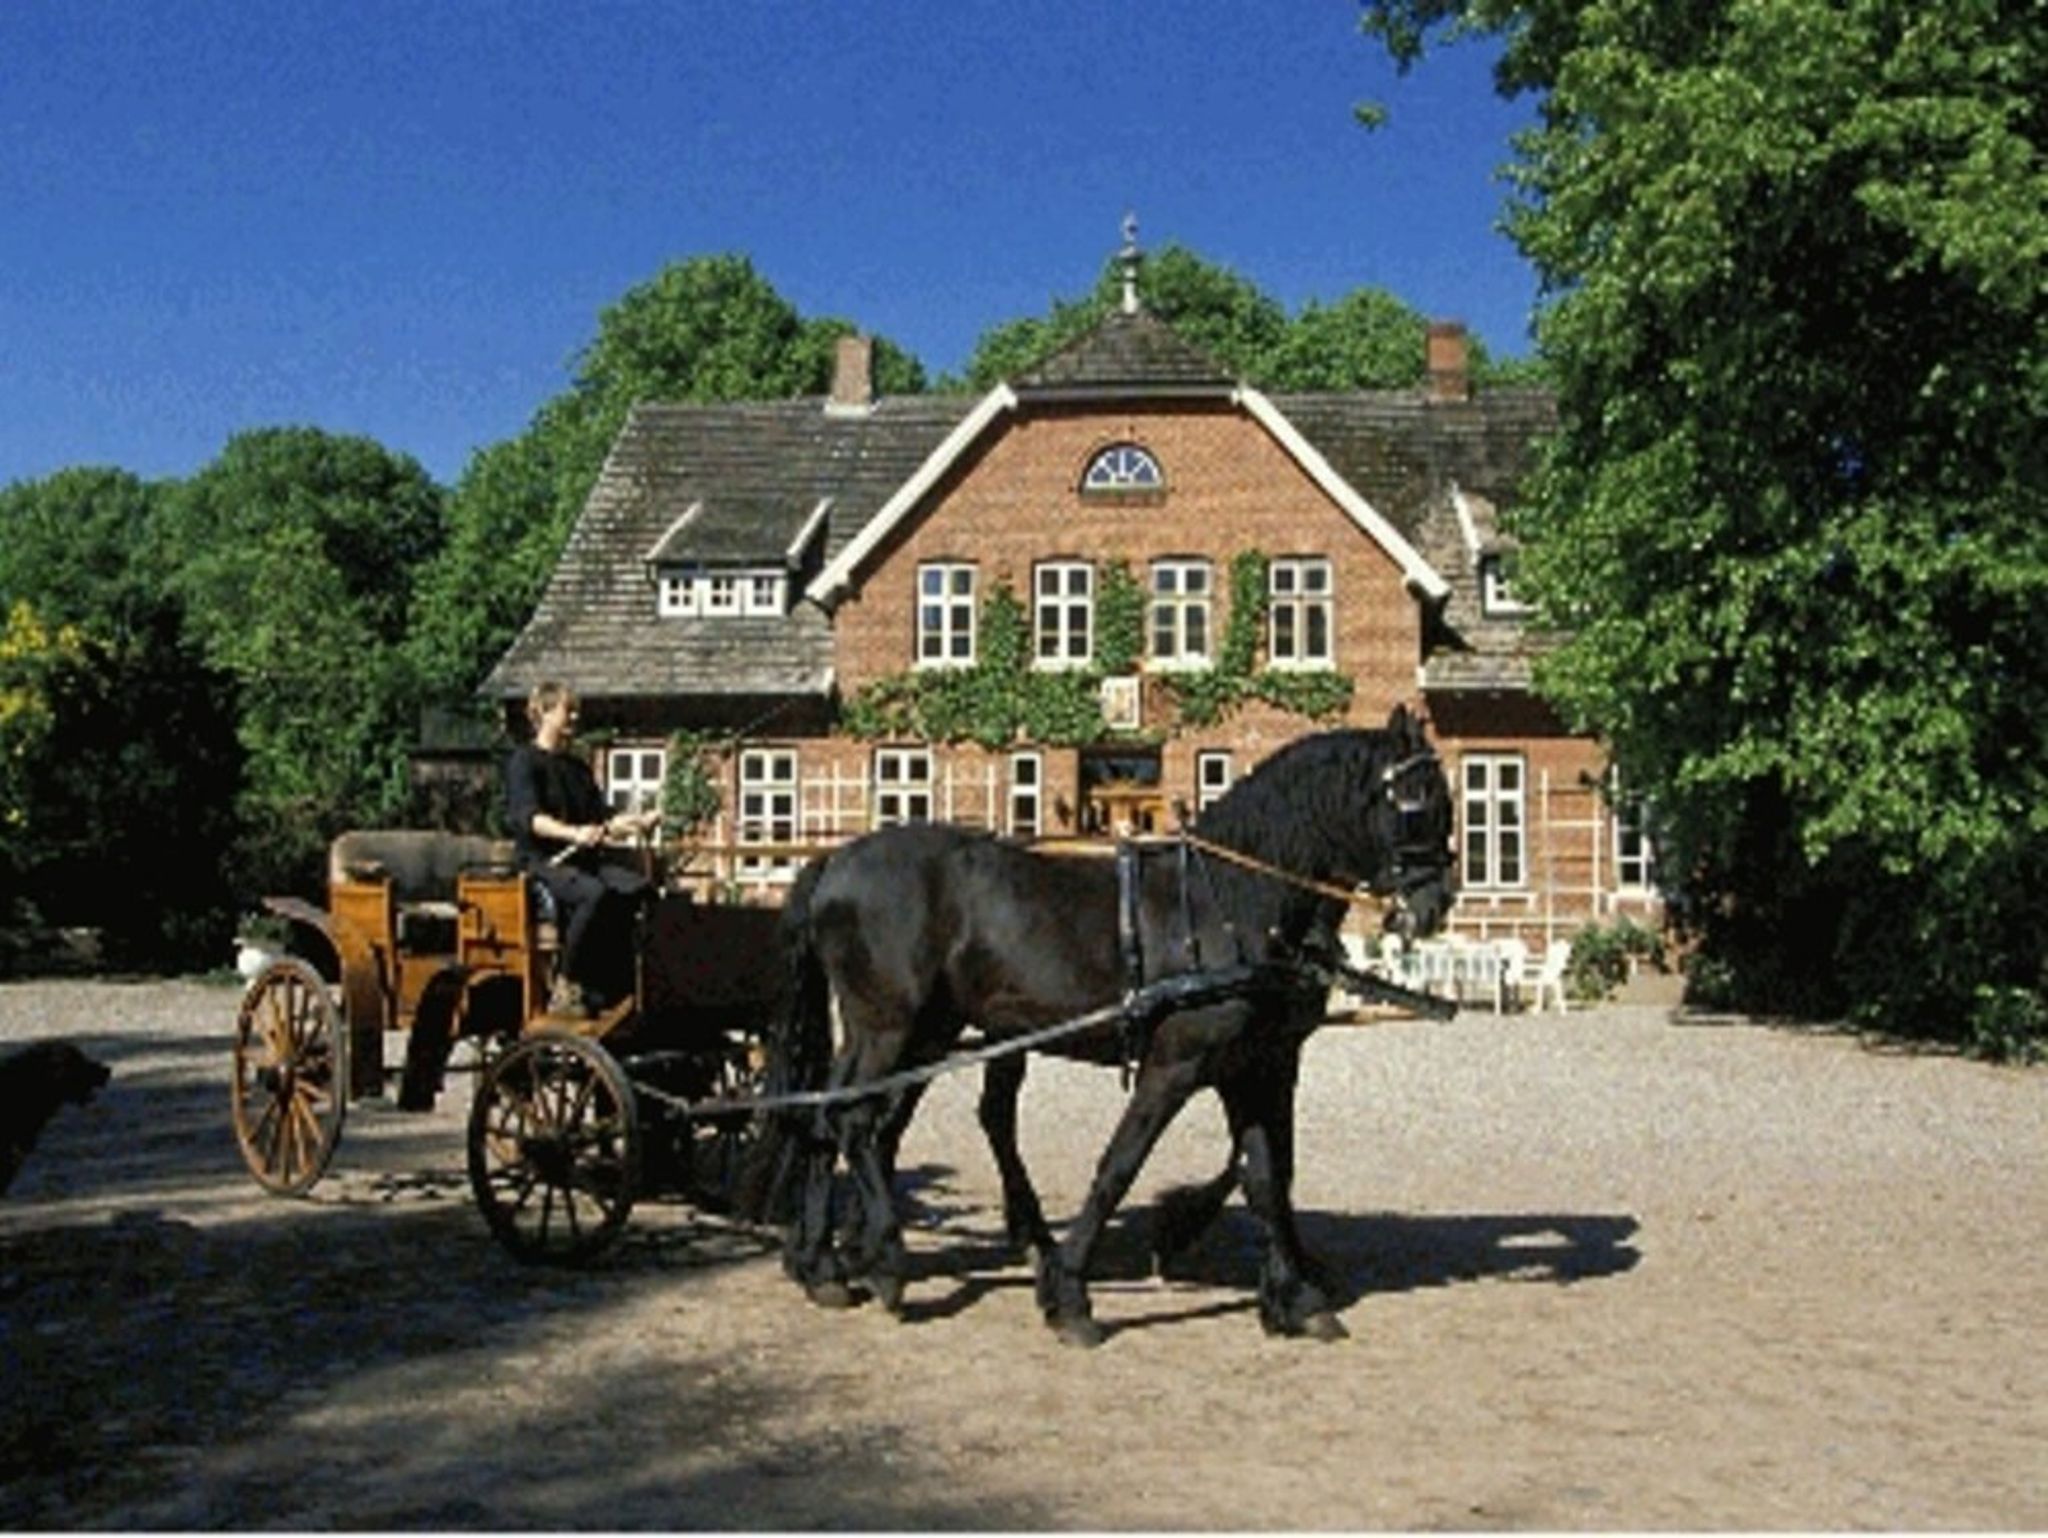 Hotel Dänischer Hof Altenholz by Tulip Inn